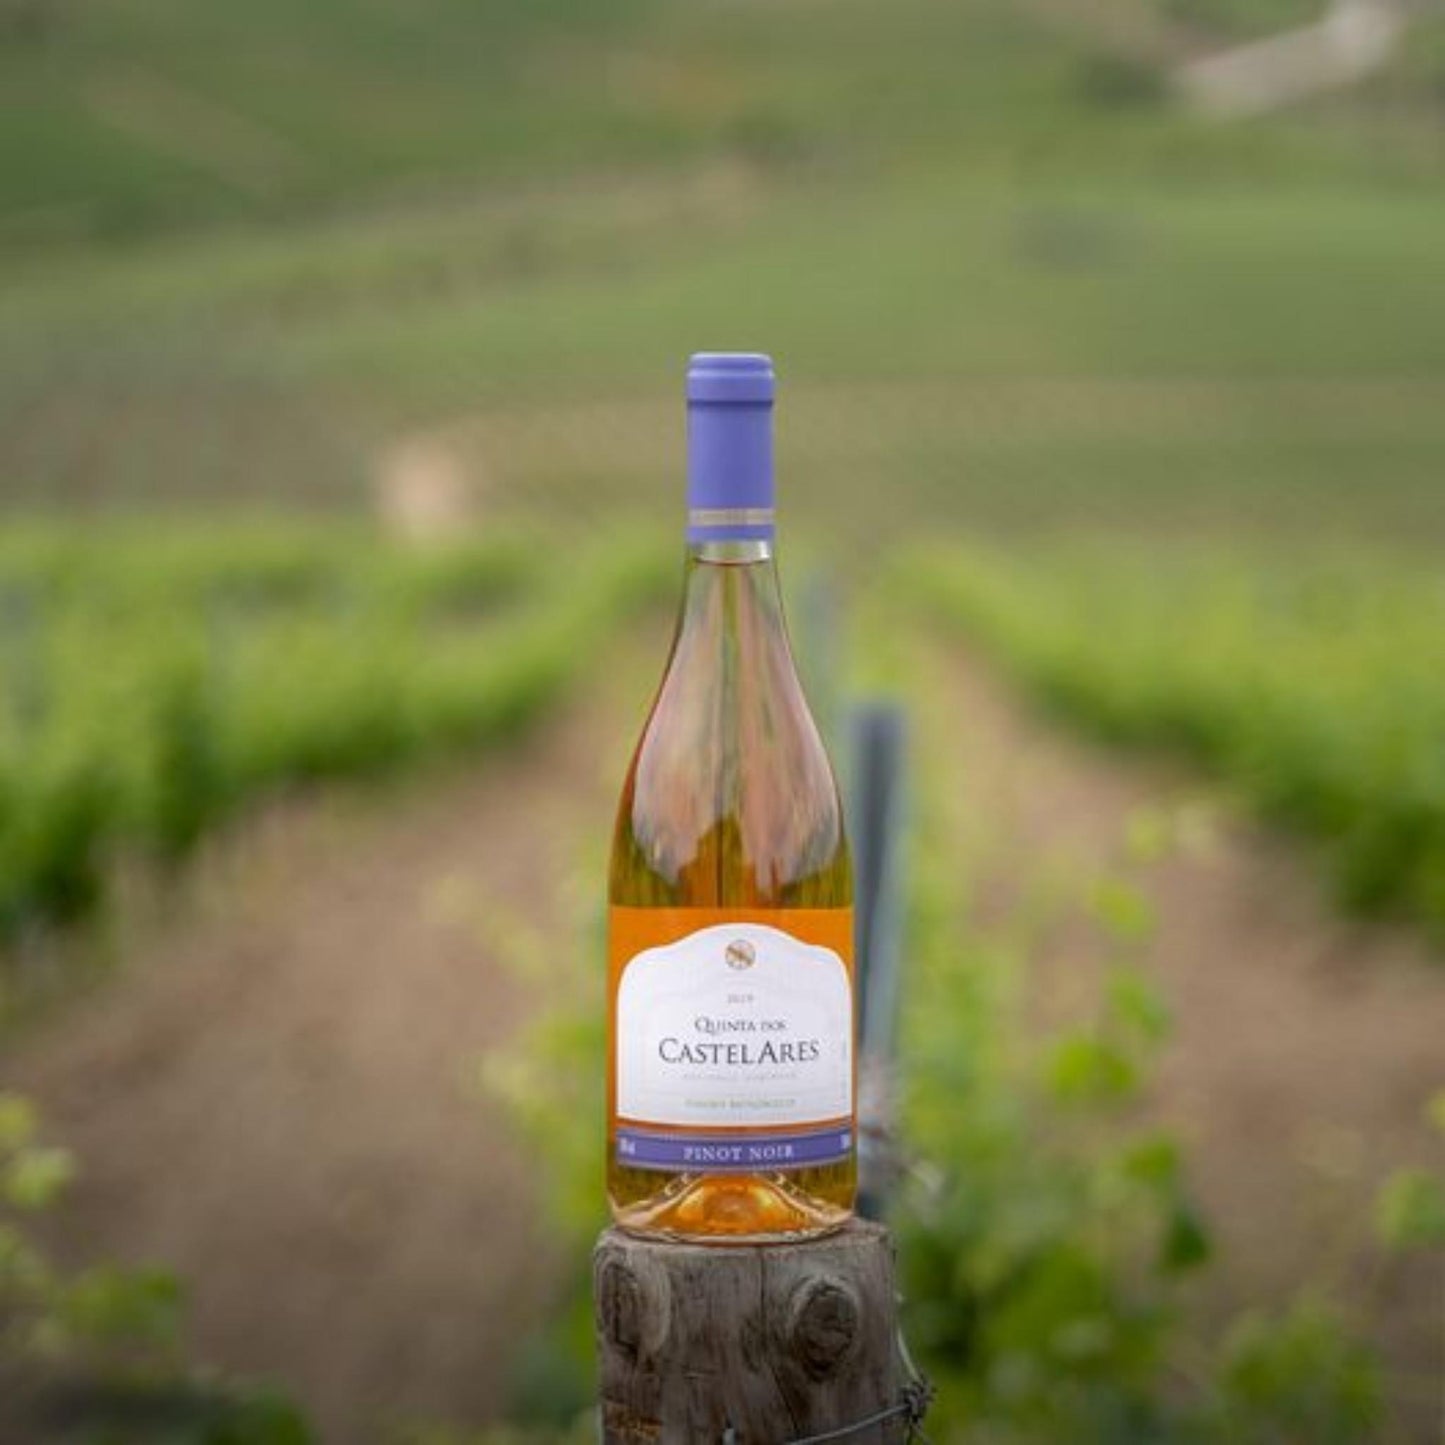 
                  
                    Quinta dos Castelares Pinot Noir Roséwein 2021 aus dem Douro / Portugal. Auf dem Bild ist die Weinflasche zu sehen stehend auf einem Holzpfahl in einem Weinberg.
                  
                